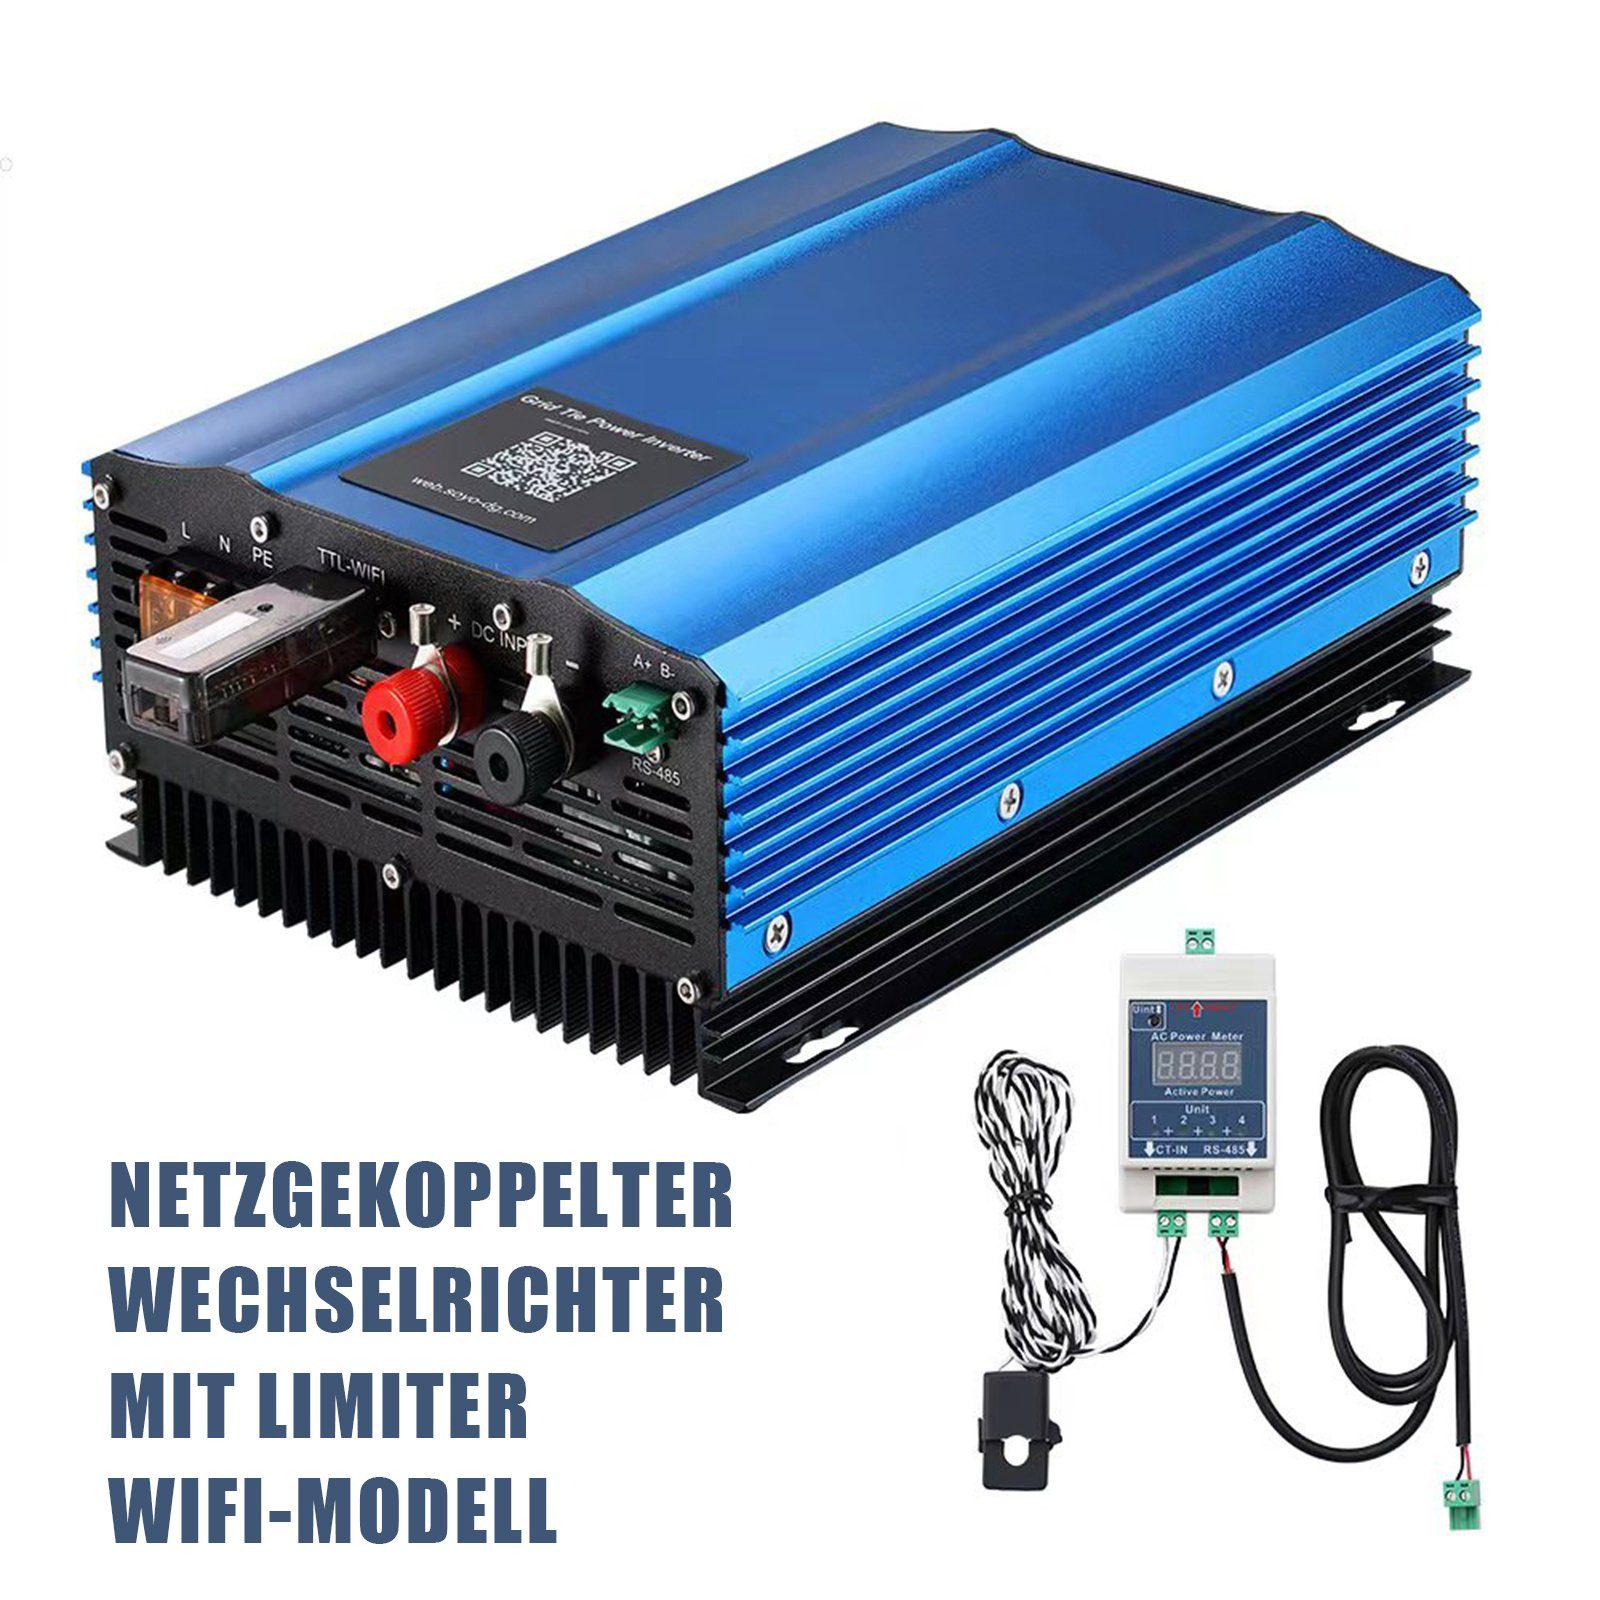 TWSOUL Wechselrichter 500W Netzgekoppelter Wechselrichter, Kompatibel mit  12V-Batterien., Mit LED-Anzeige